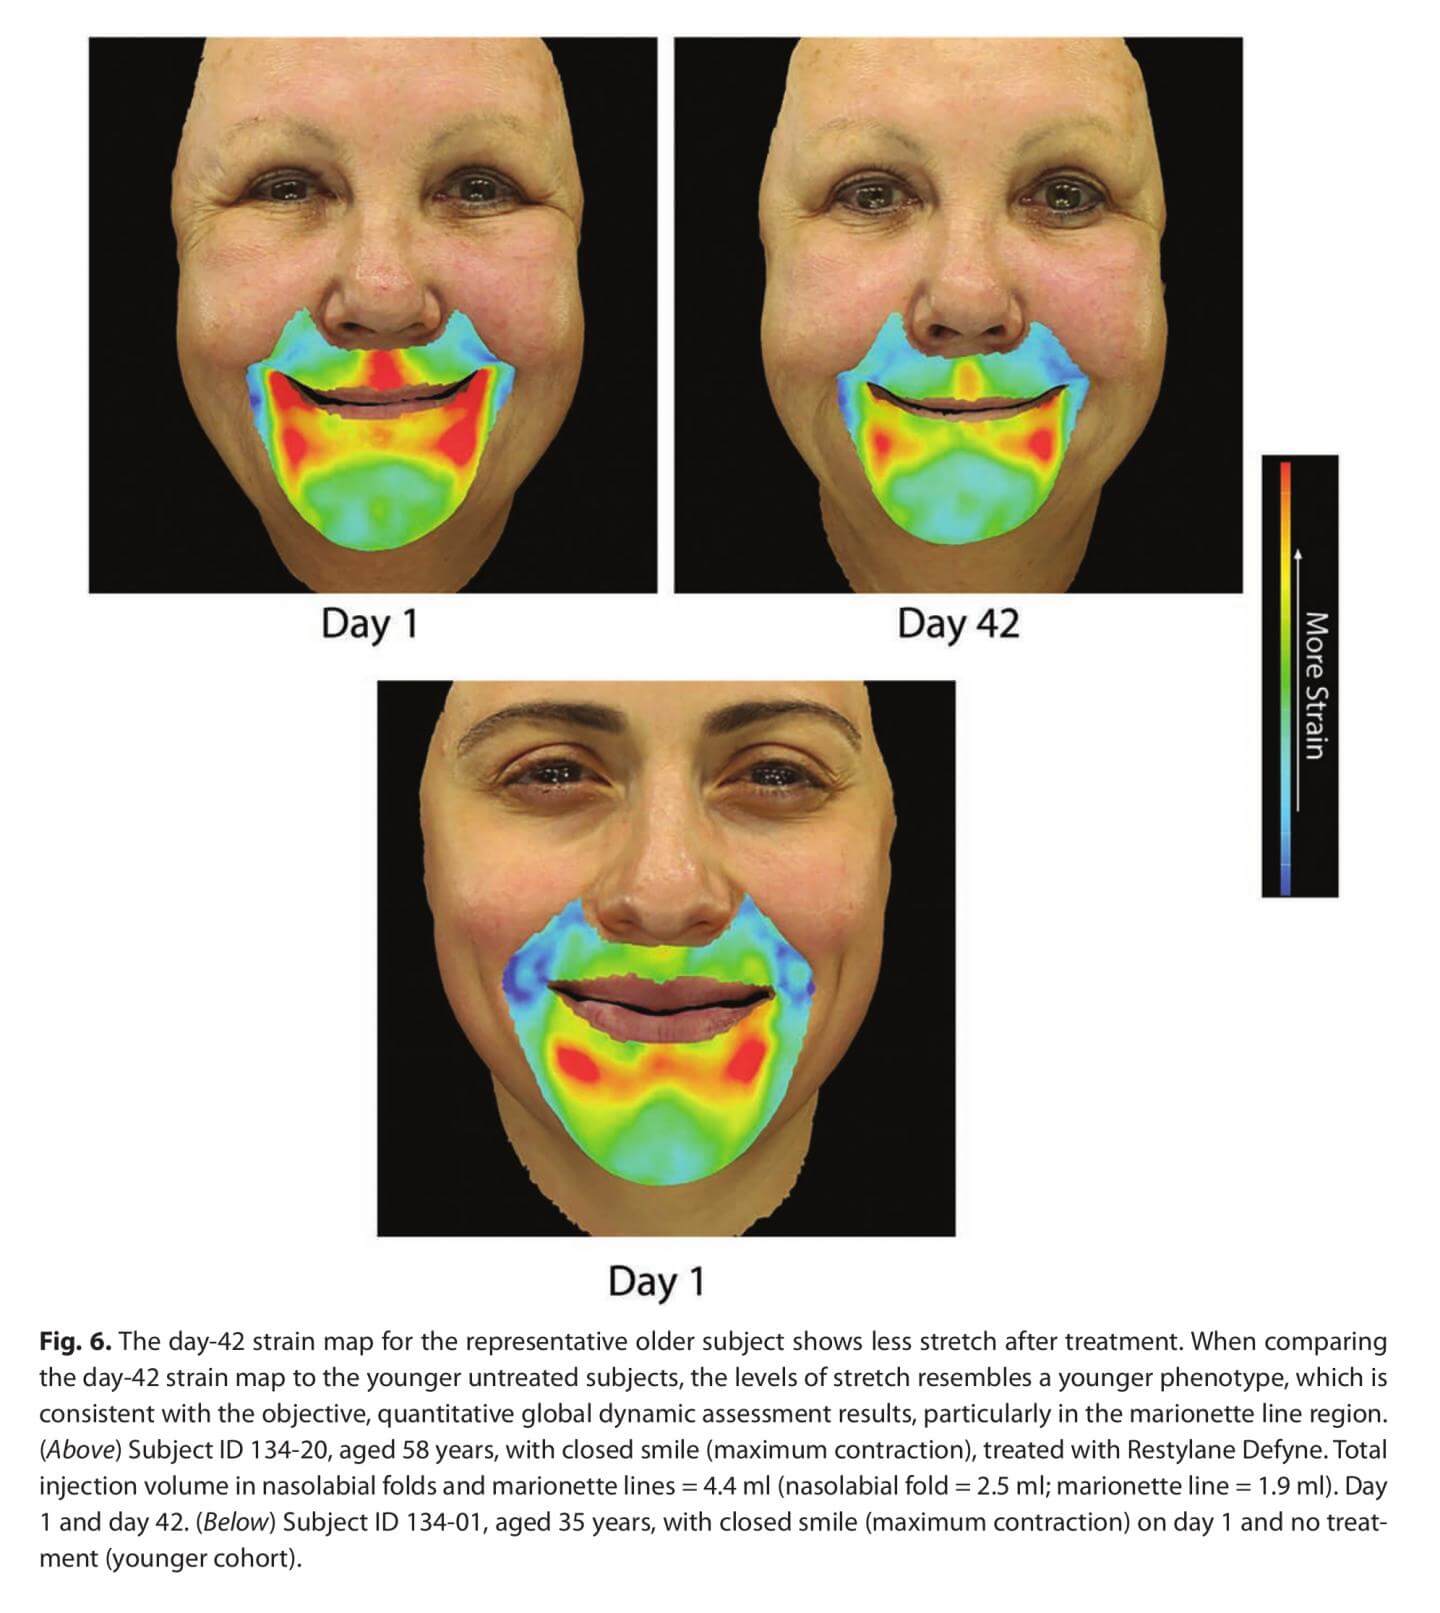 חומרי מילוי המבוססים על חומצה היאלורונית גם מחזירים דינמיקת תנועה צעירה יותר של הפנים